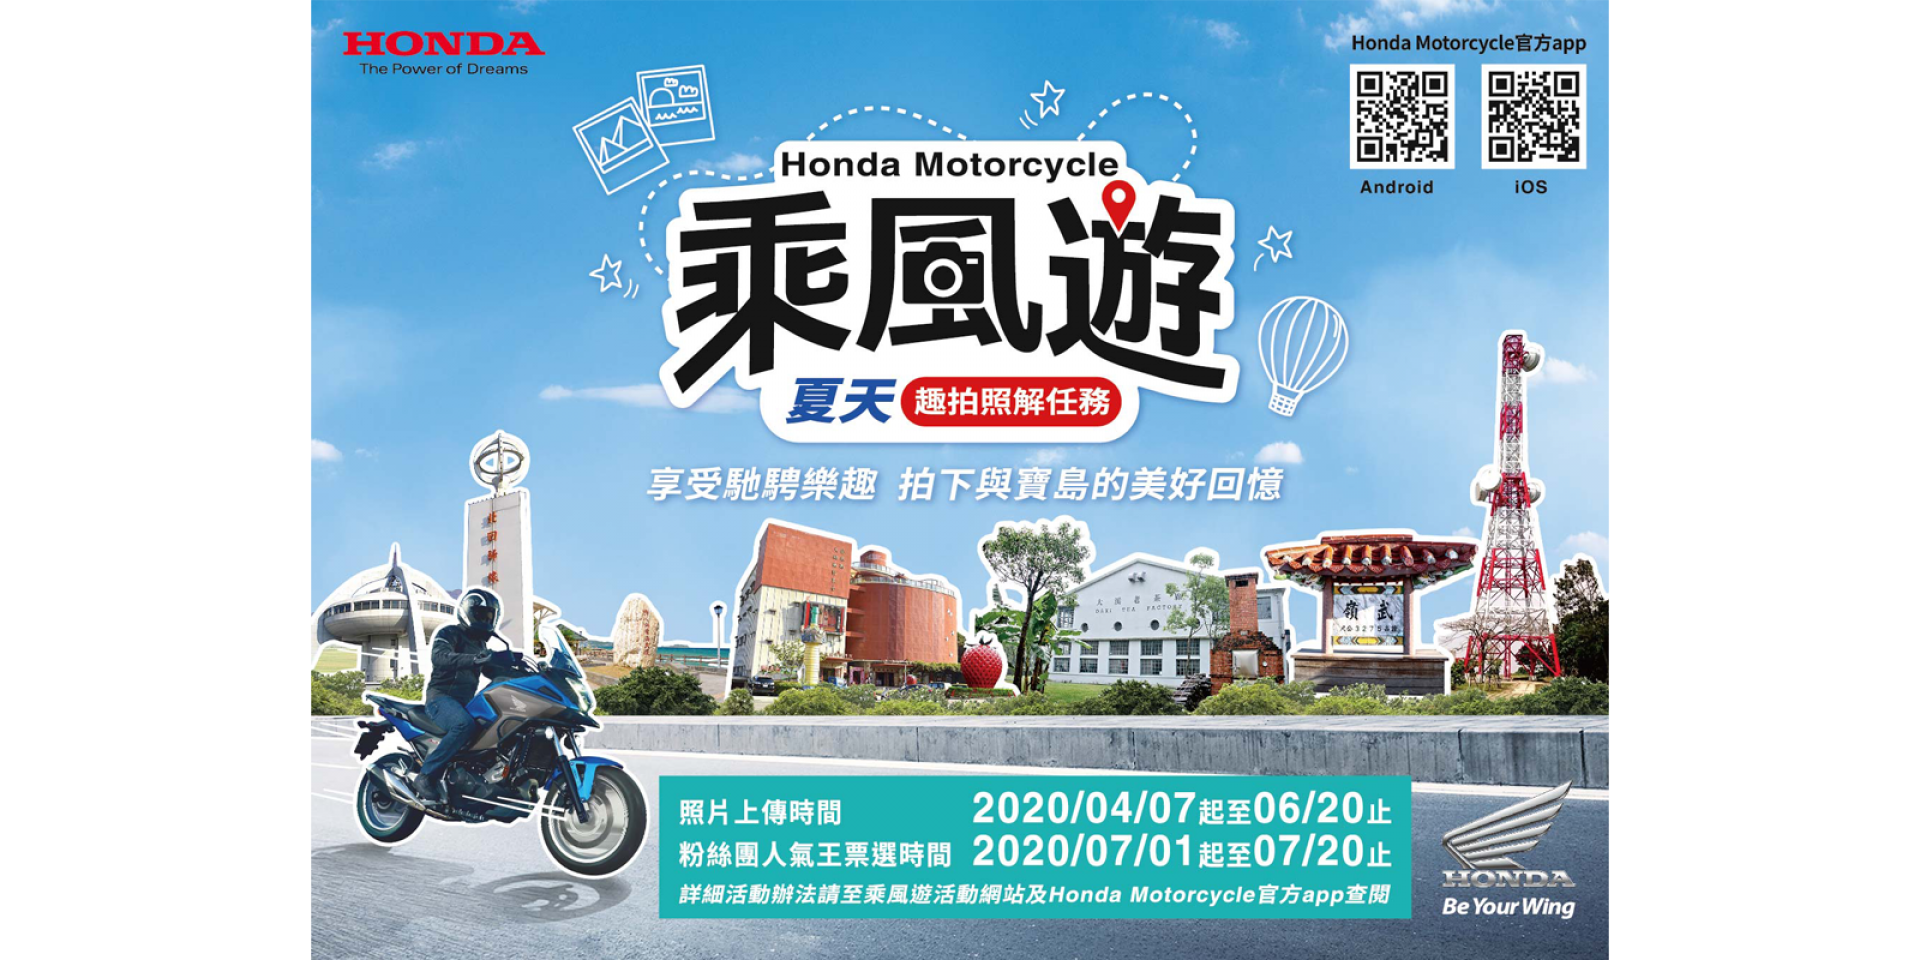 官方新聞稿。2020 Honda Motorcycle 乘風遊 車主專屬活動開跑，夏天趣拍照解任務，來店試乘即享專屬限量禮！